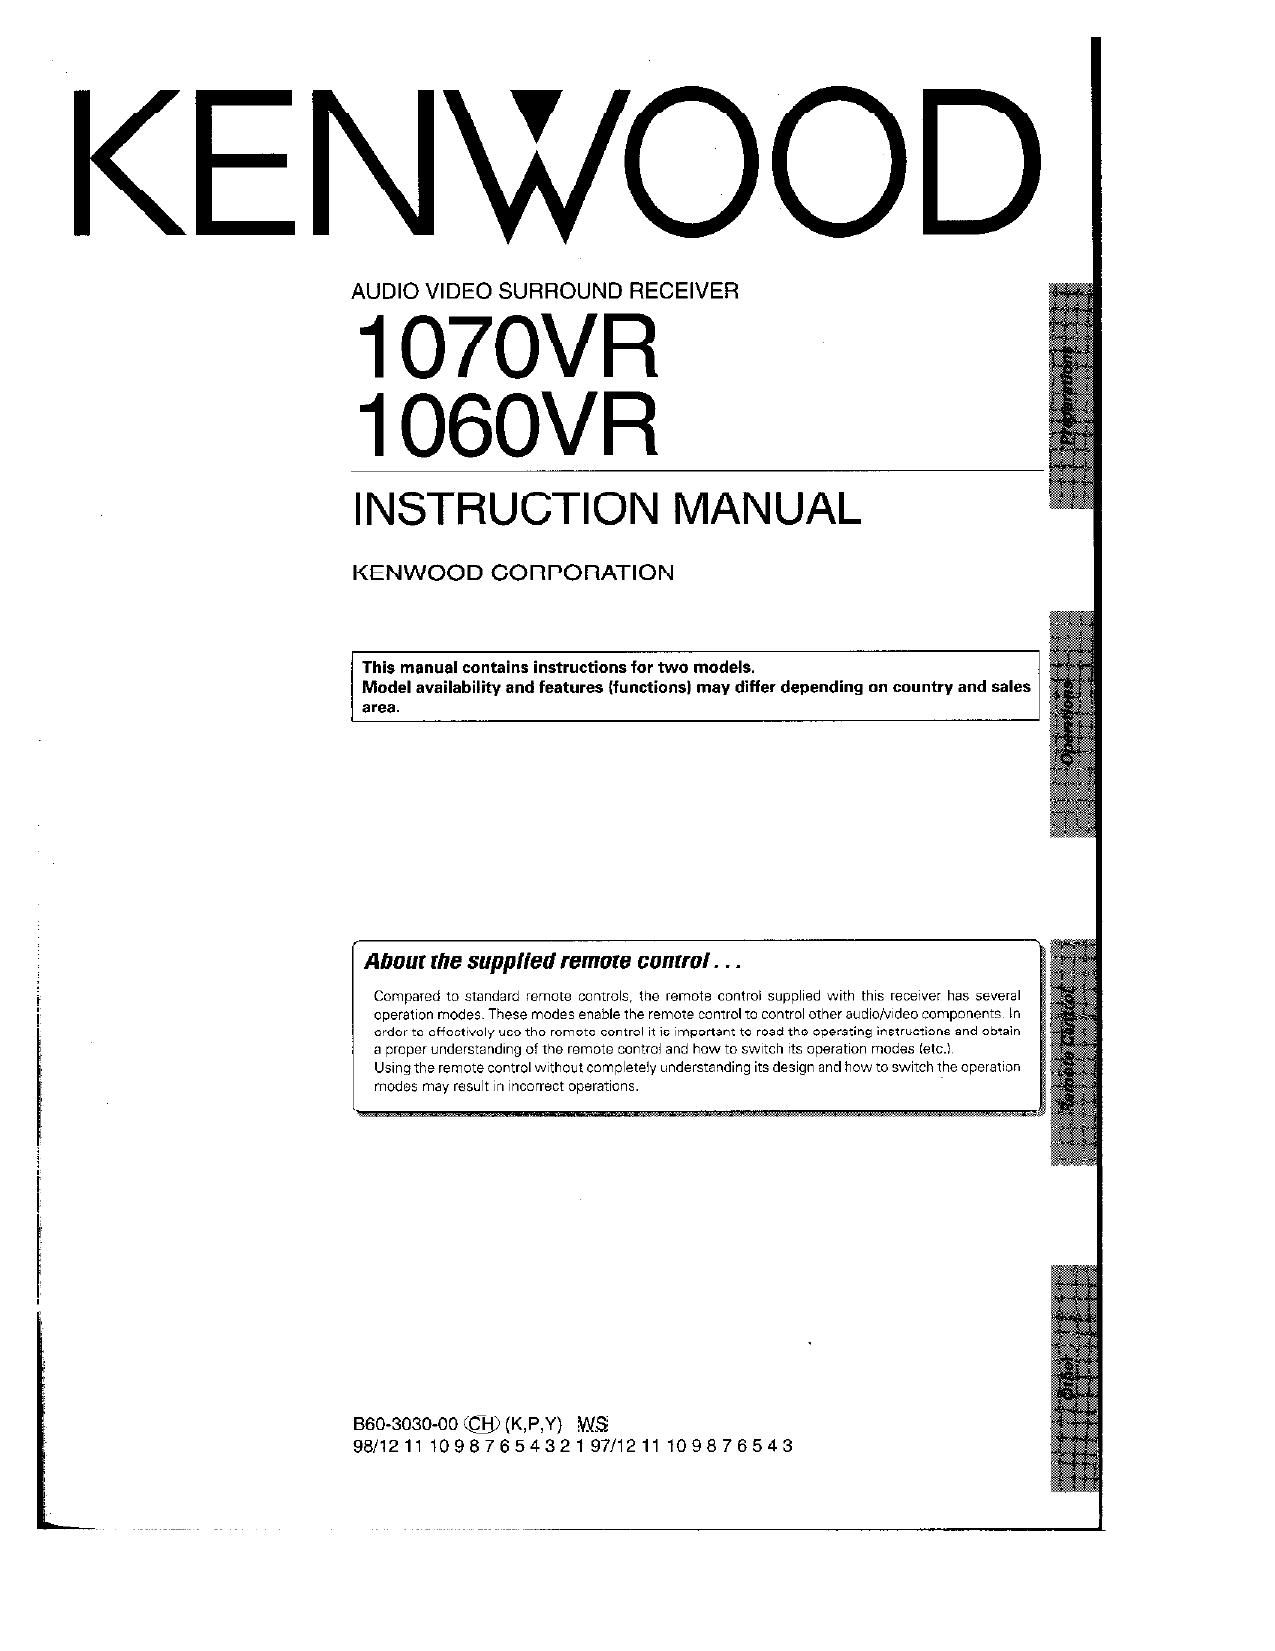 Kenwood 1060 VR Owners Manual